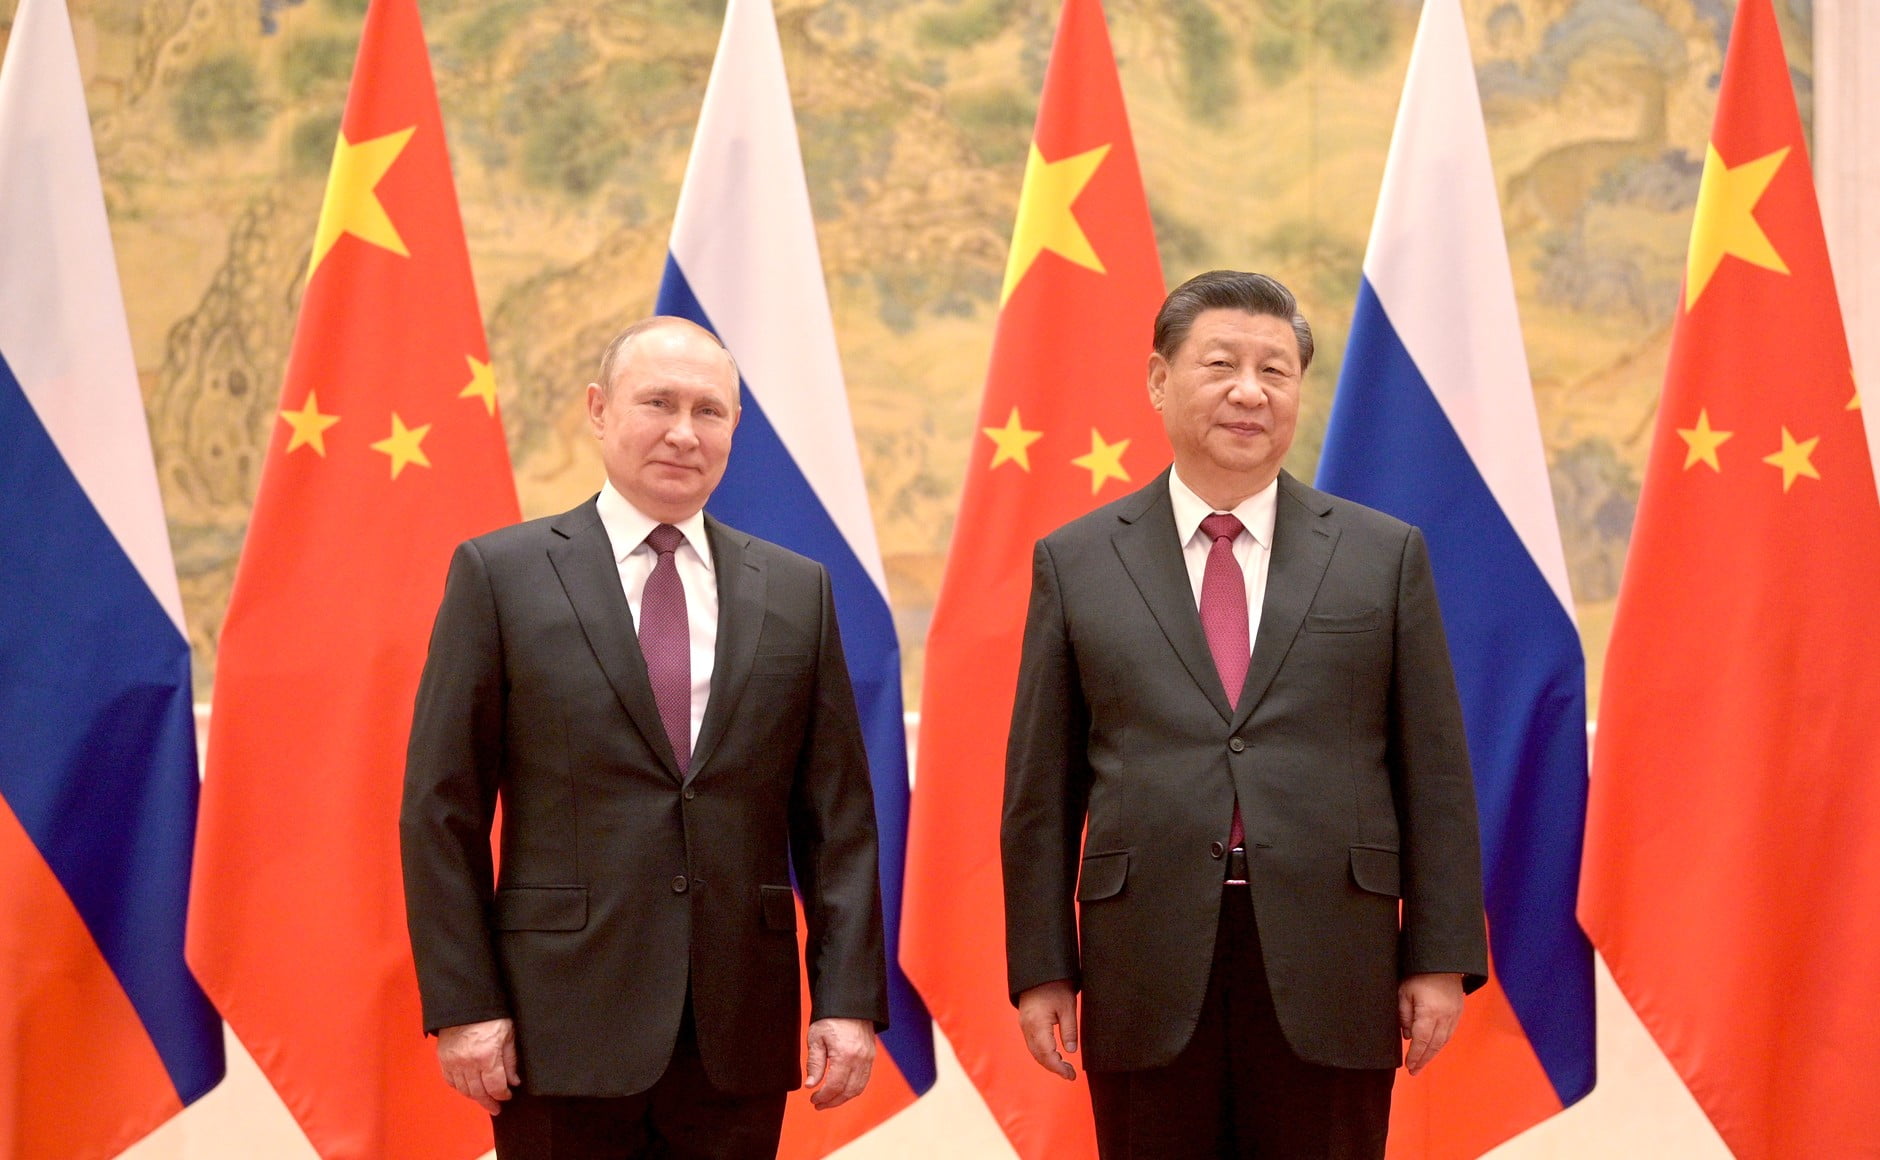 Xi și Putin conduc lumea împreună